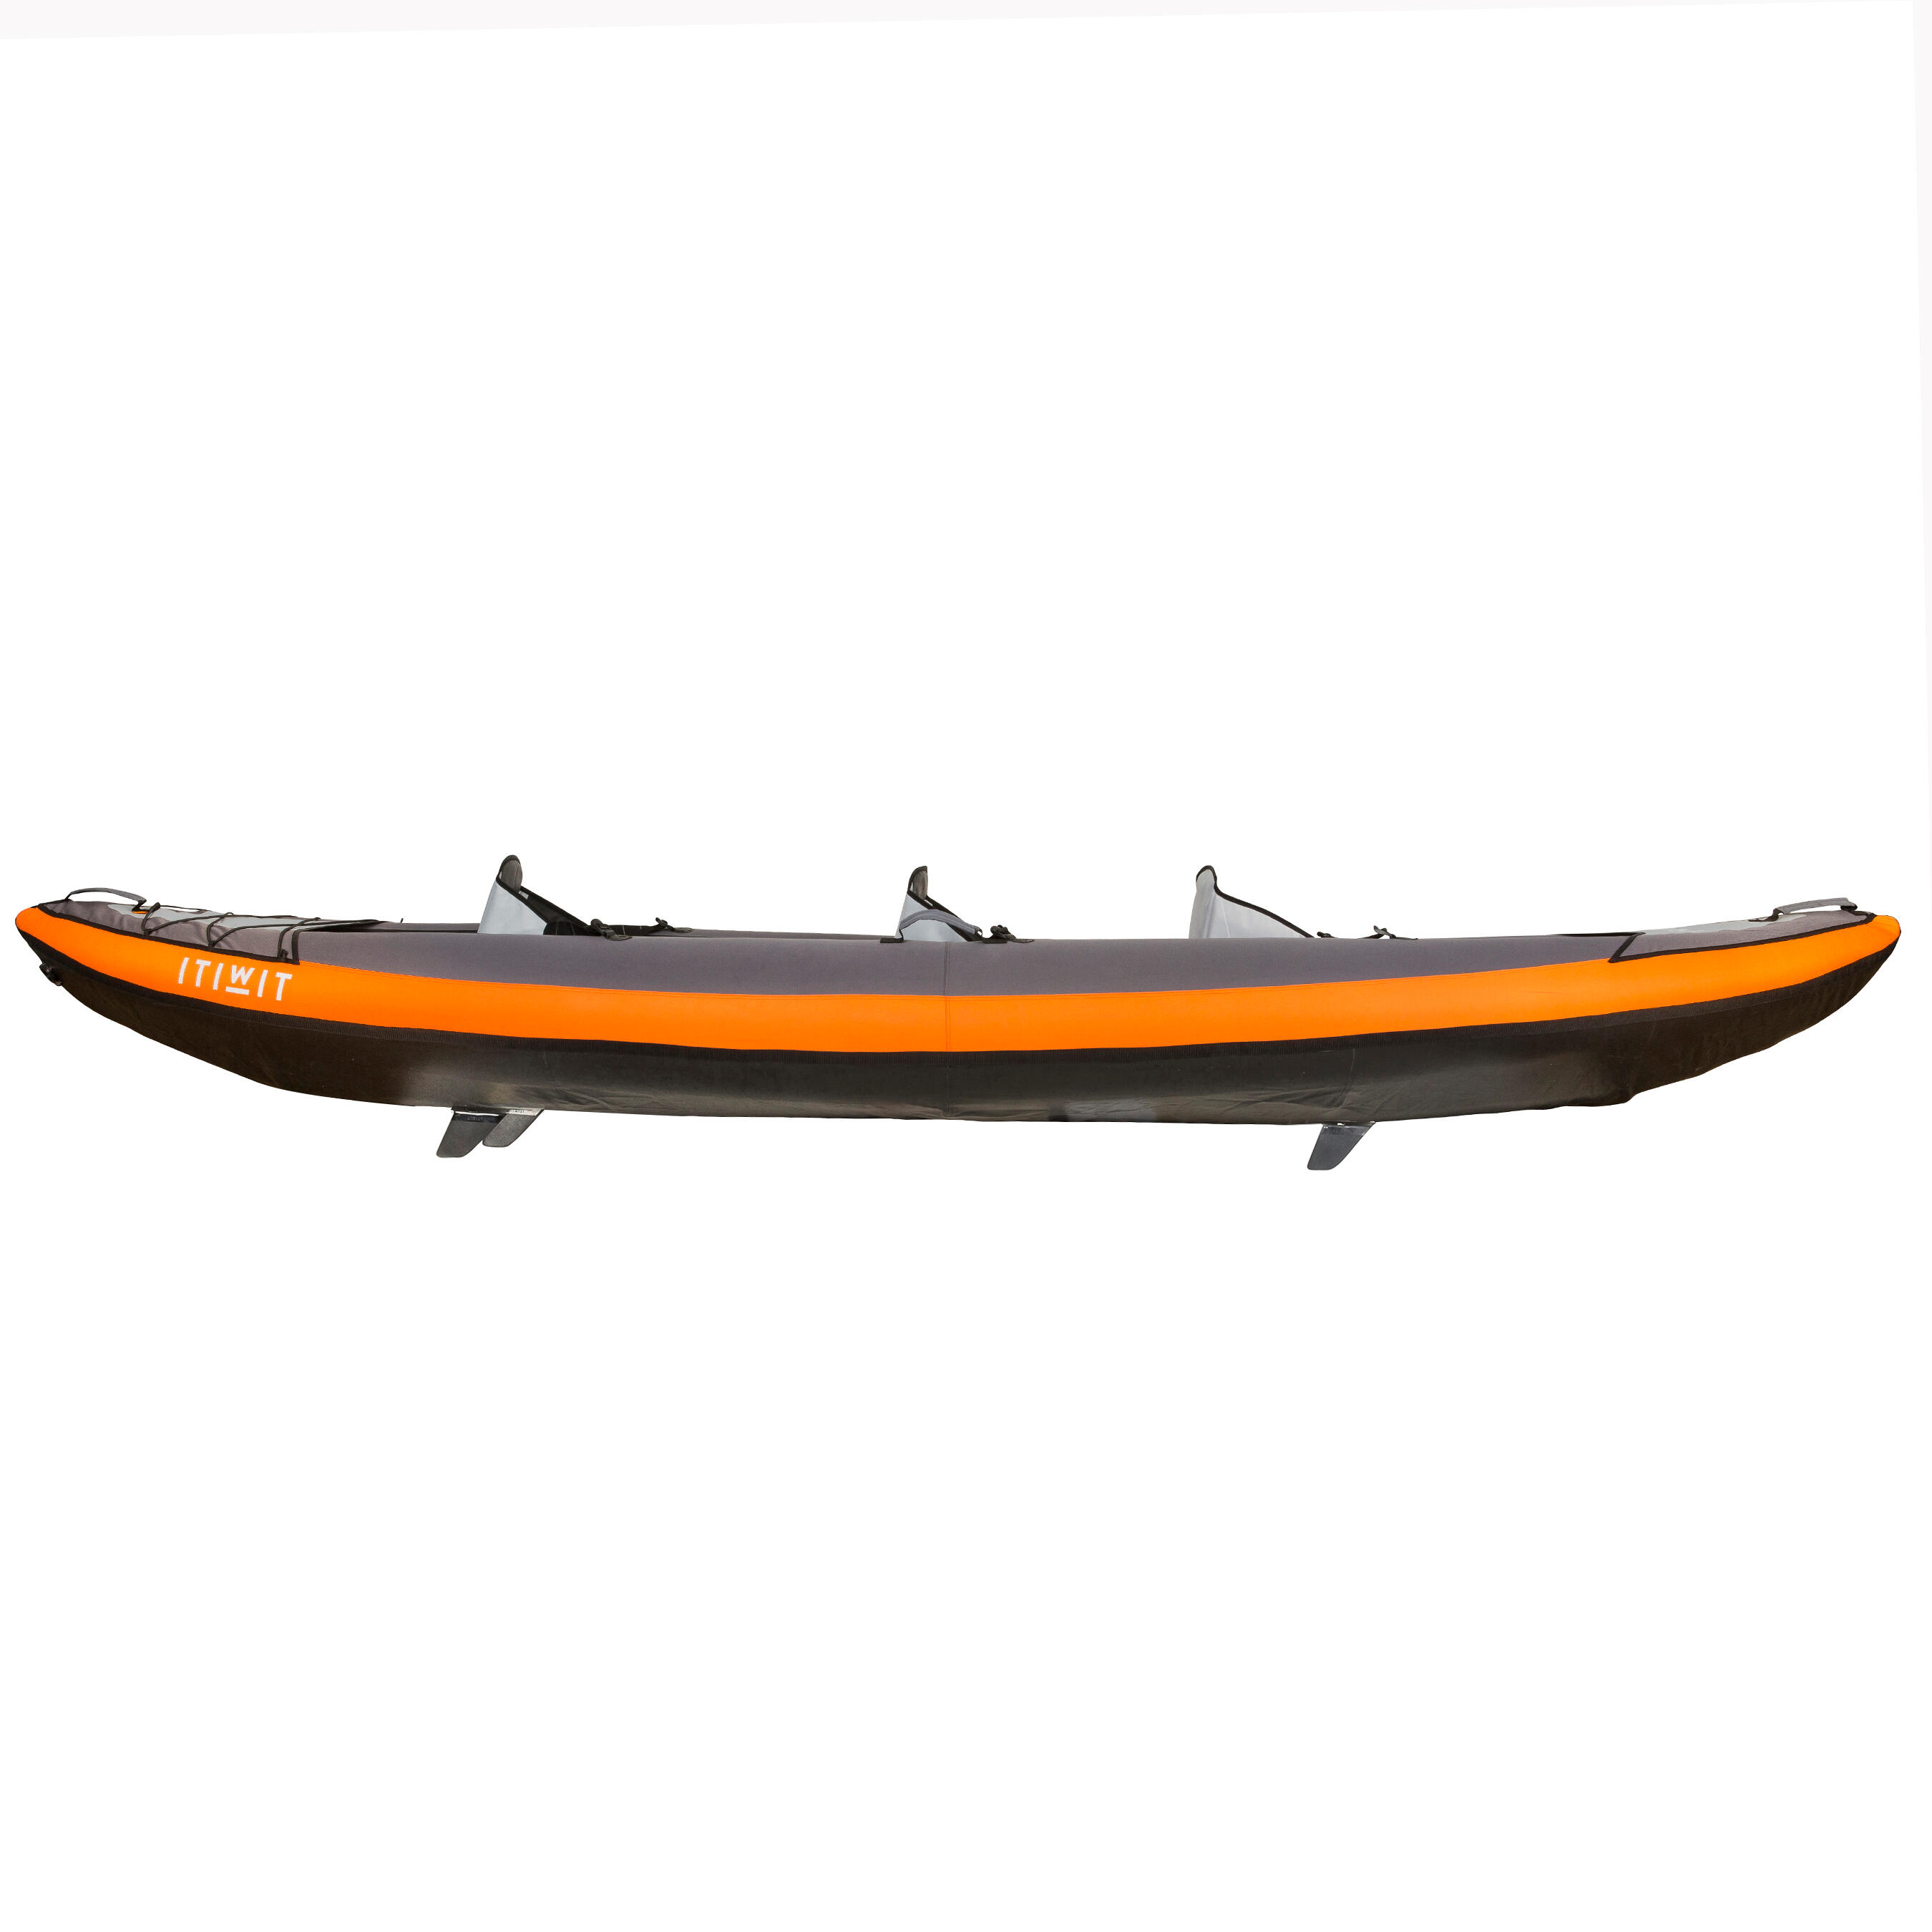 3-Seater Inflatable Kayak - KTI 100 Orange - ITIWIT